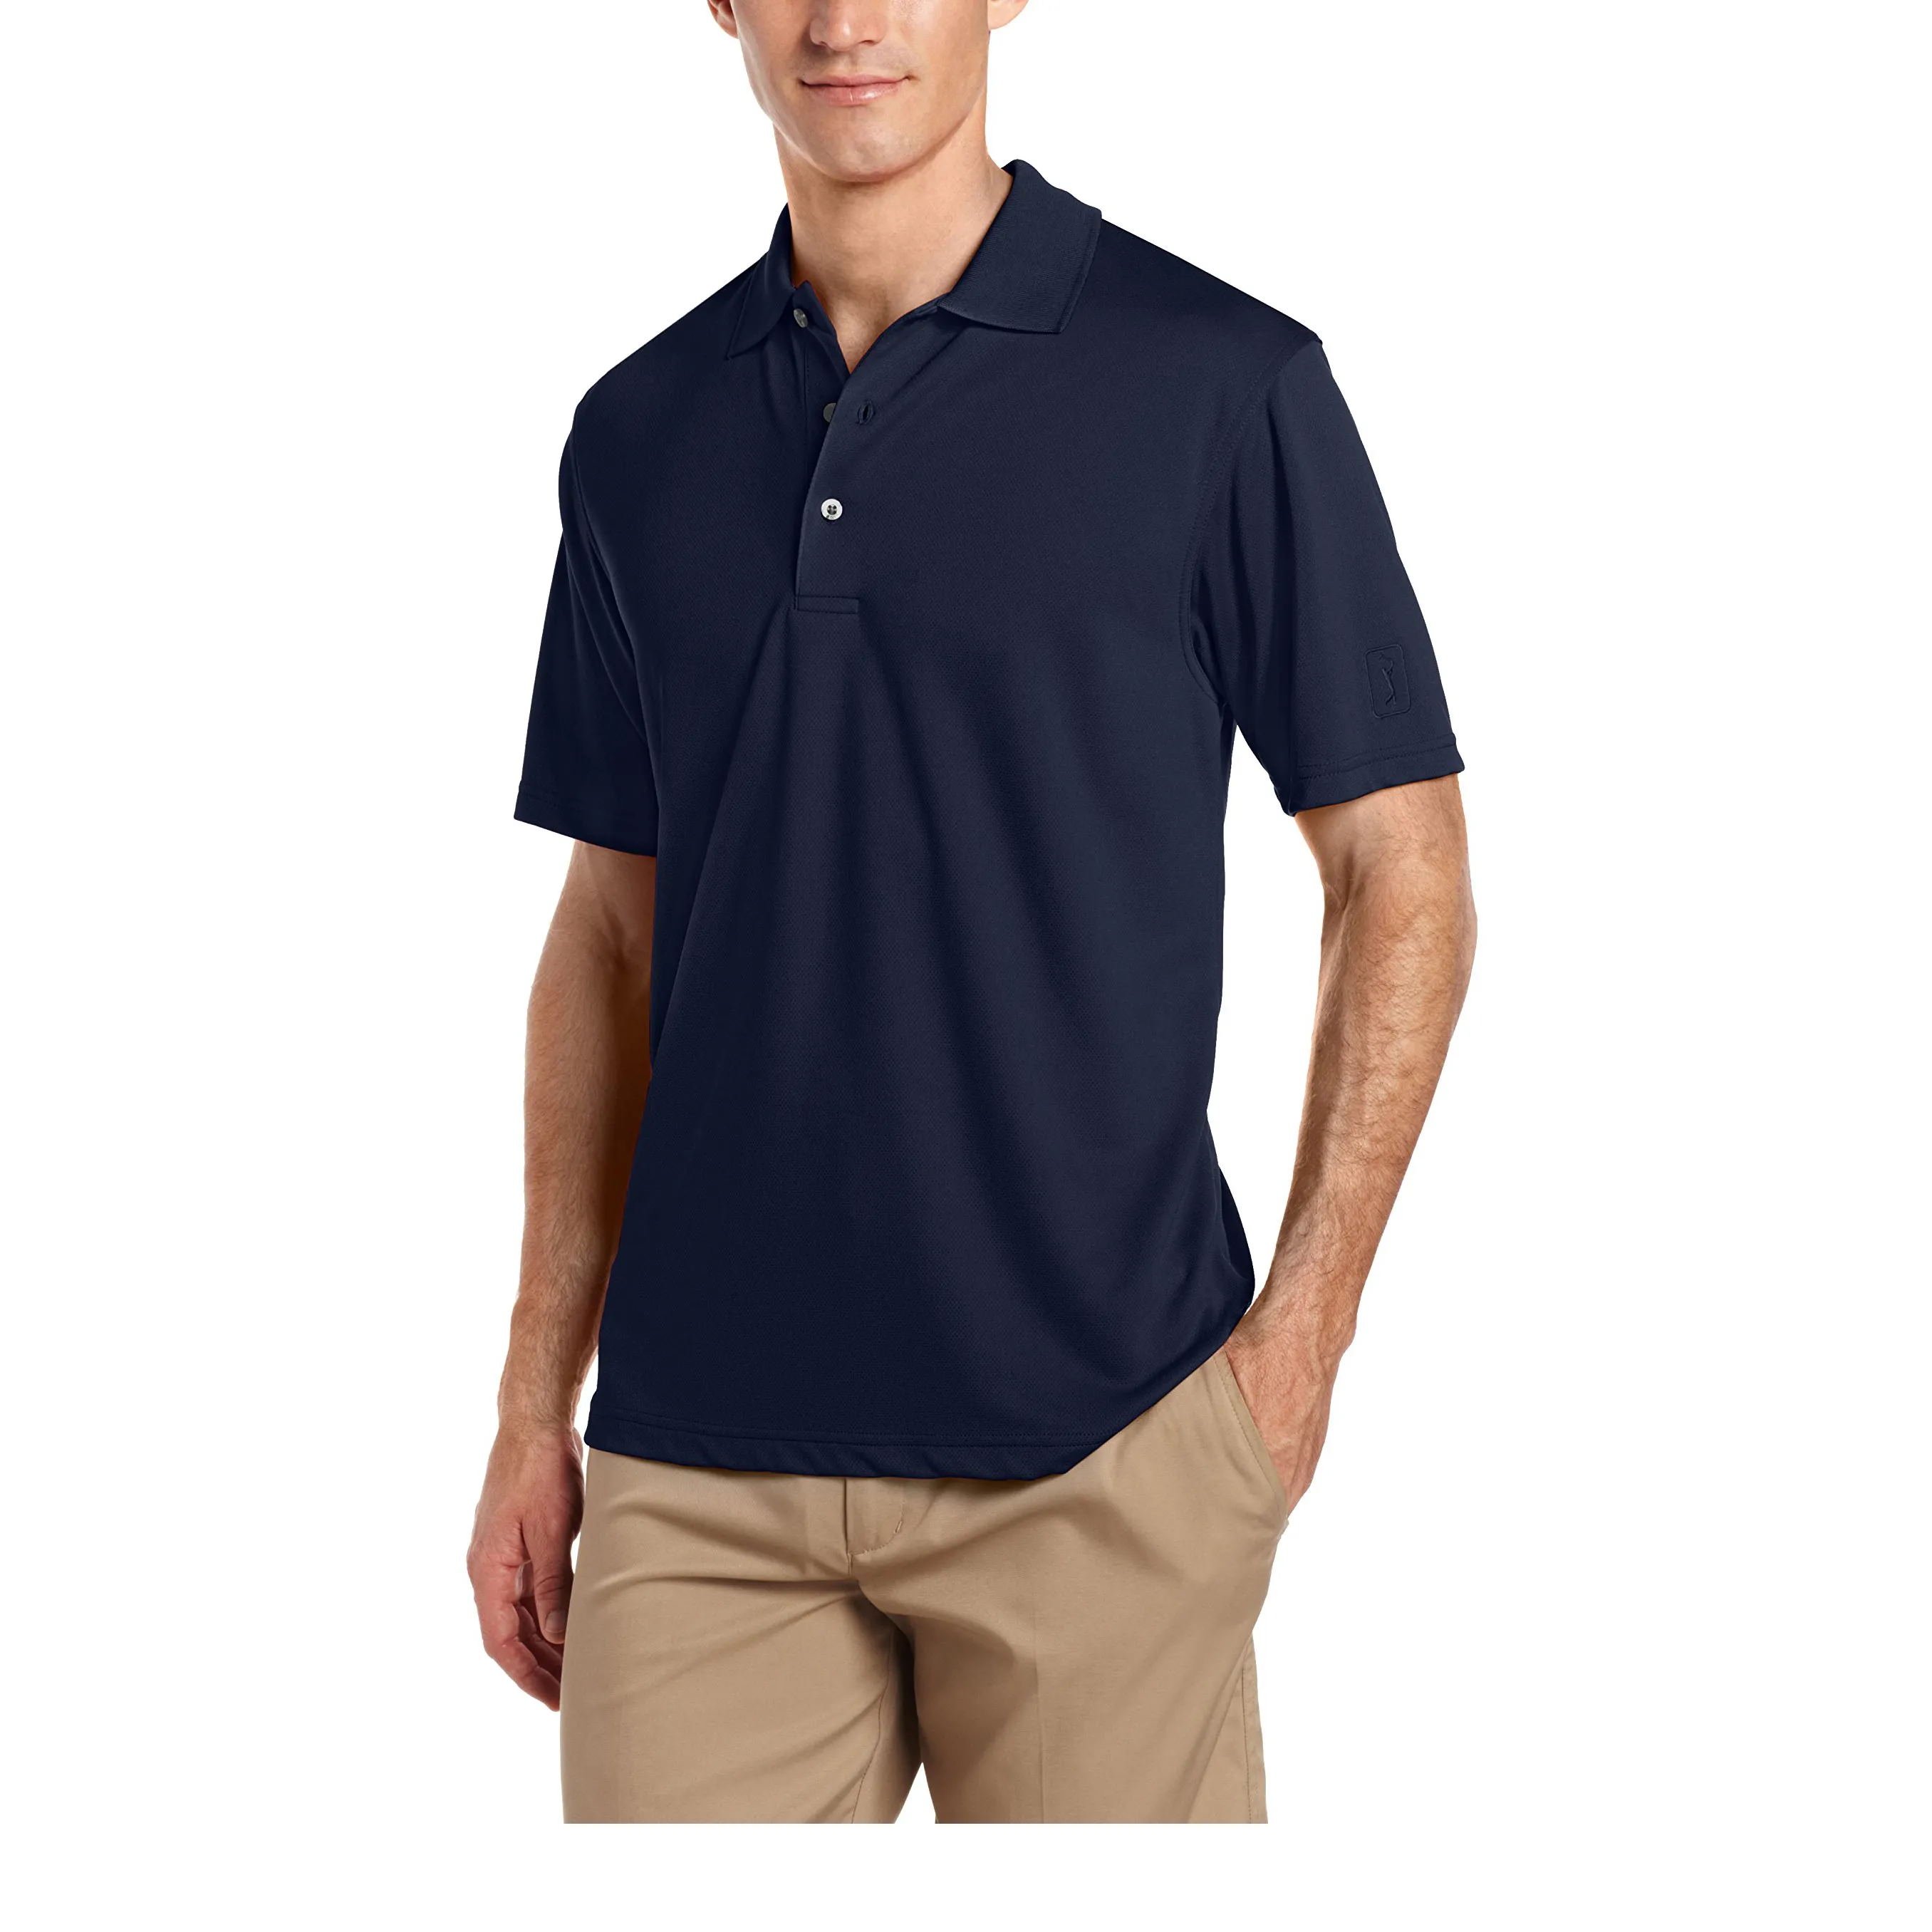 कस्टम शैली आकस्मिक mens के लिए सादे लघु आस्तीन गोल्फ पोलो टी शर्ट खेल कशीदाकारी पहनने प्लस आकार पोलो टी शर्ट